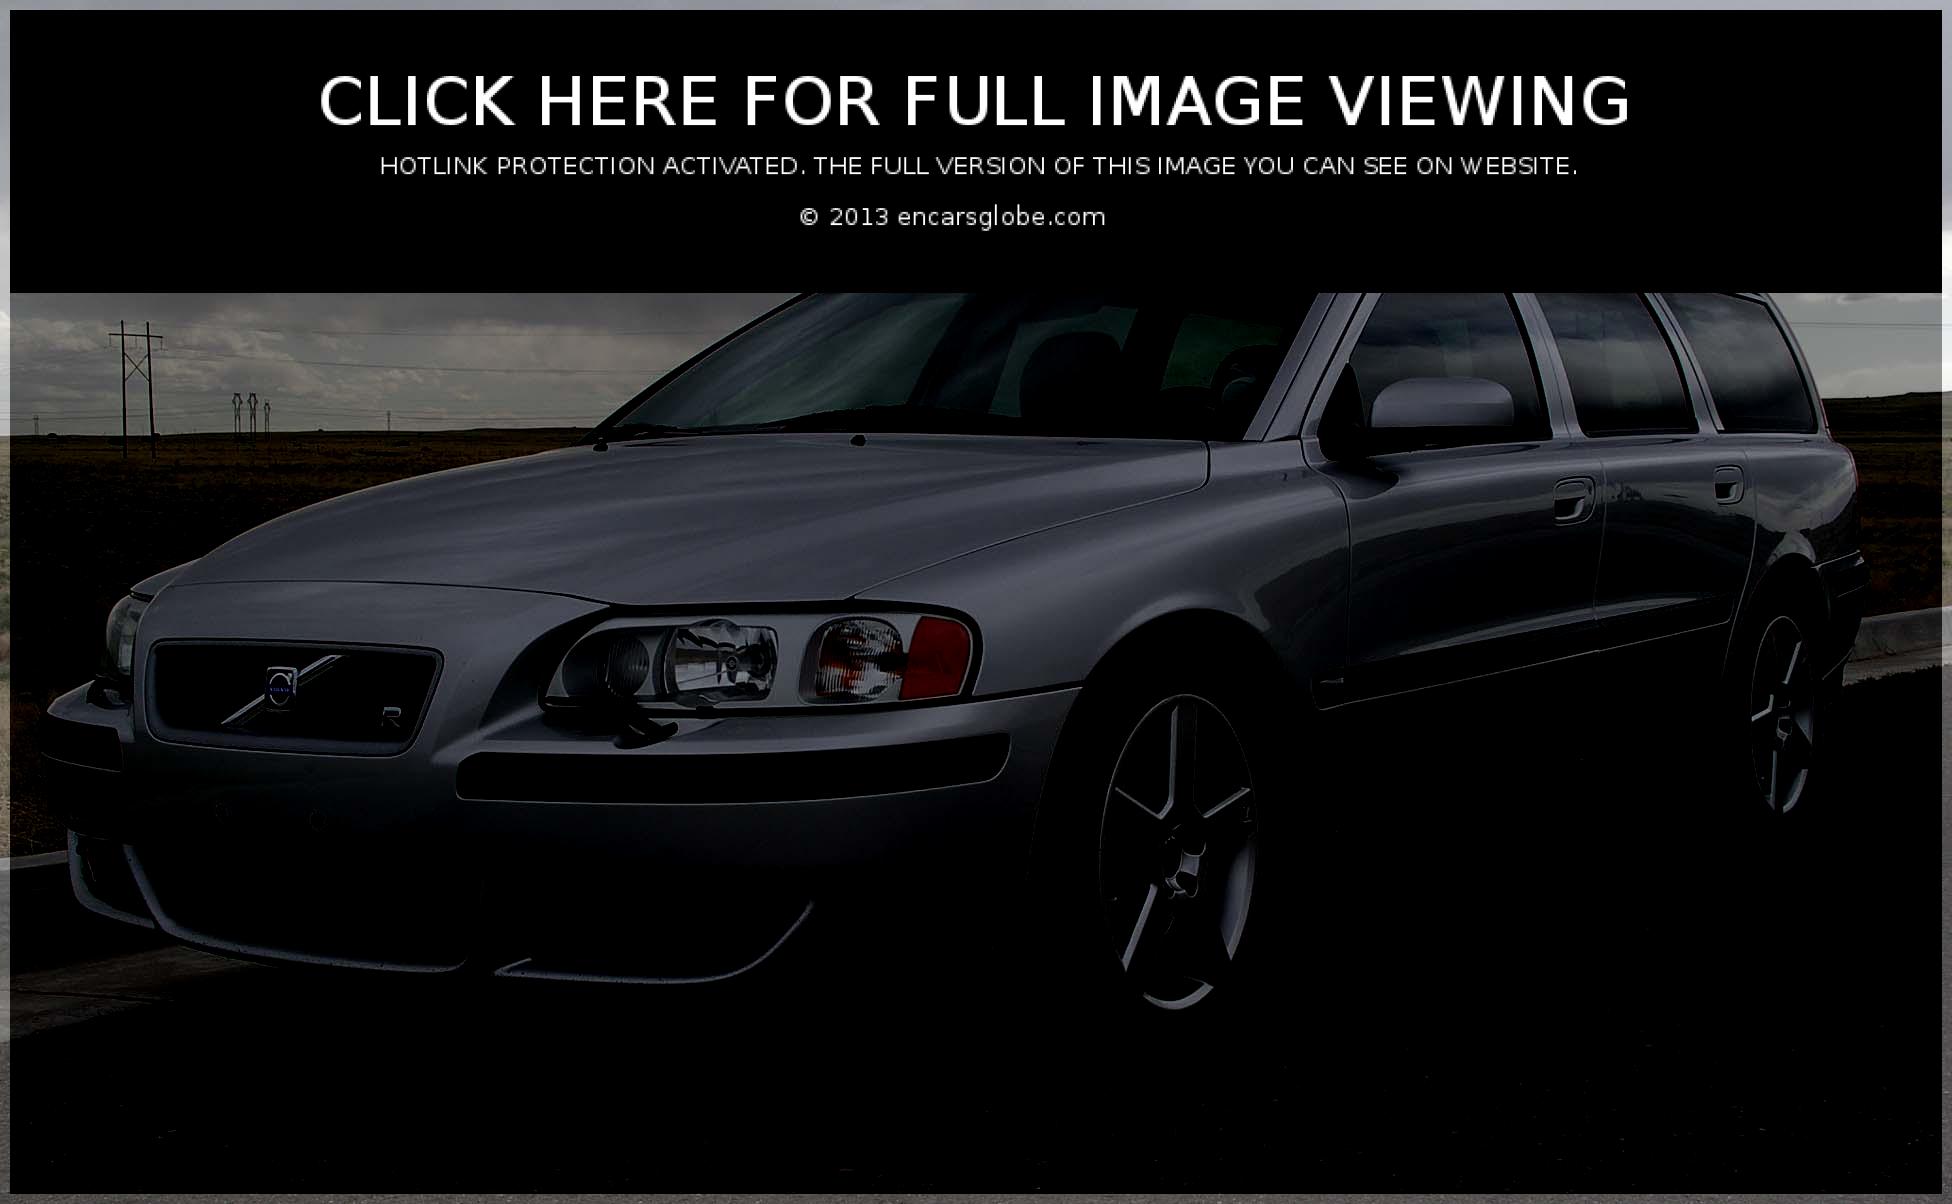 Volvo V 70 (09 image) Size: 1952 x 1204 px | 25890 views